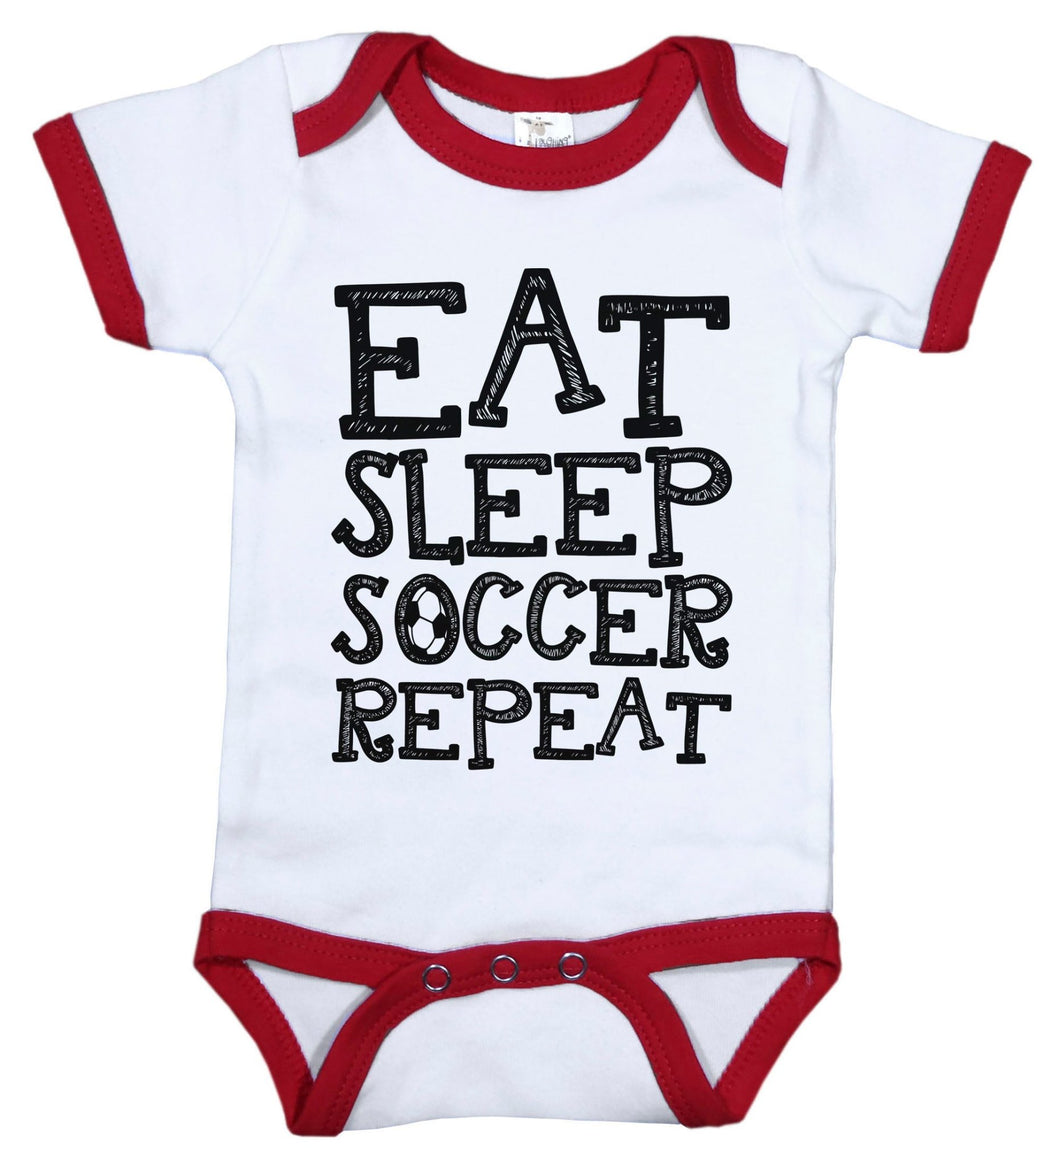 Eat. Sleep. Soccer. Repeat / Soccer Ringer Onesie - Baffle